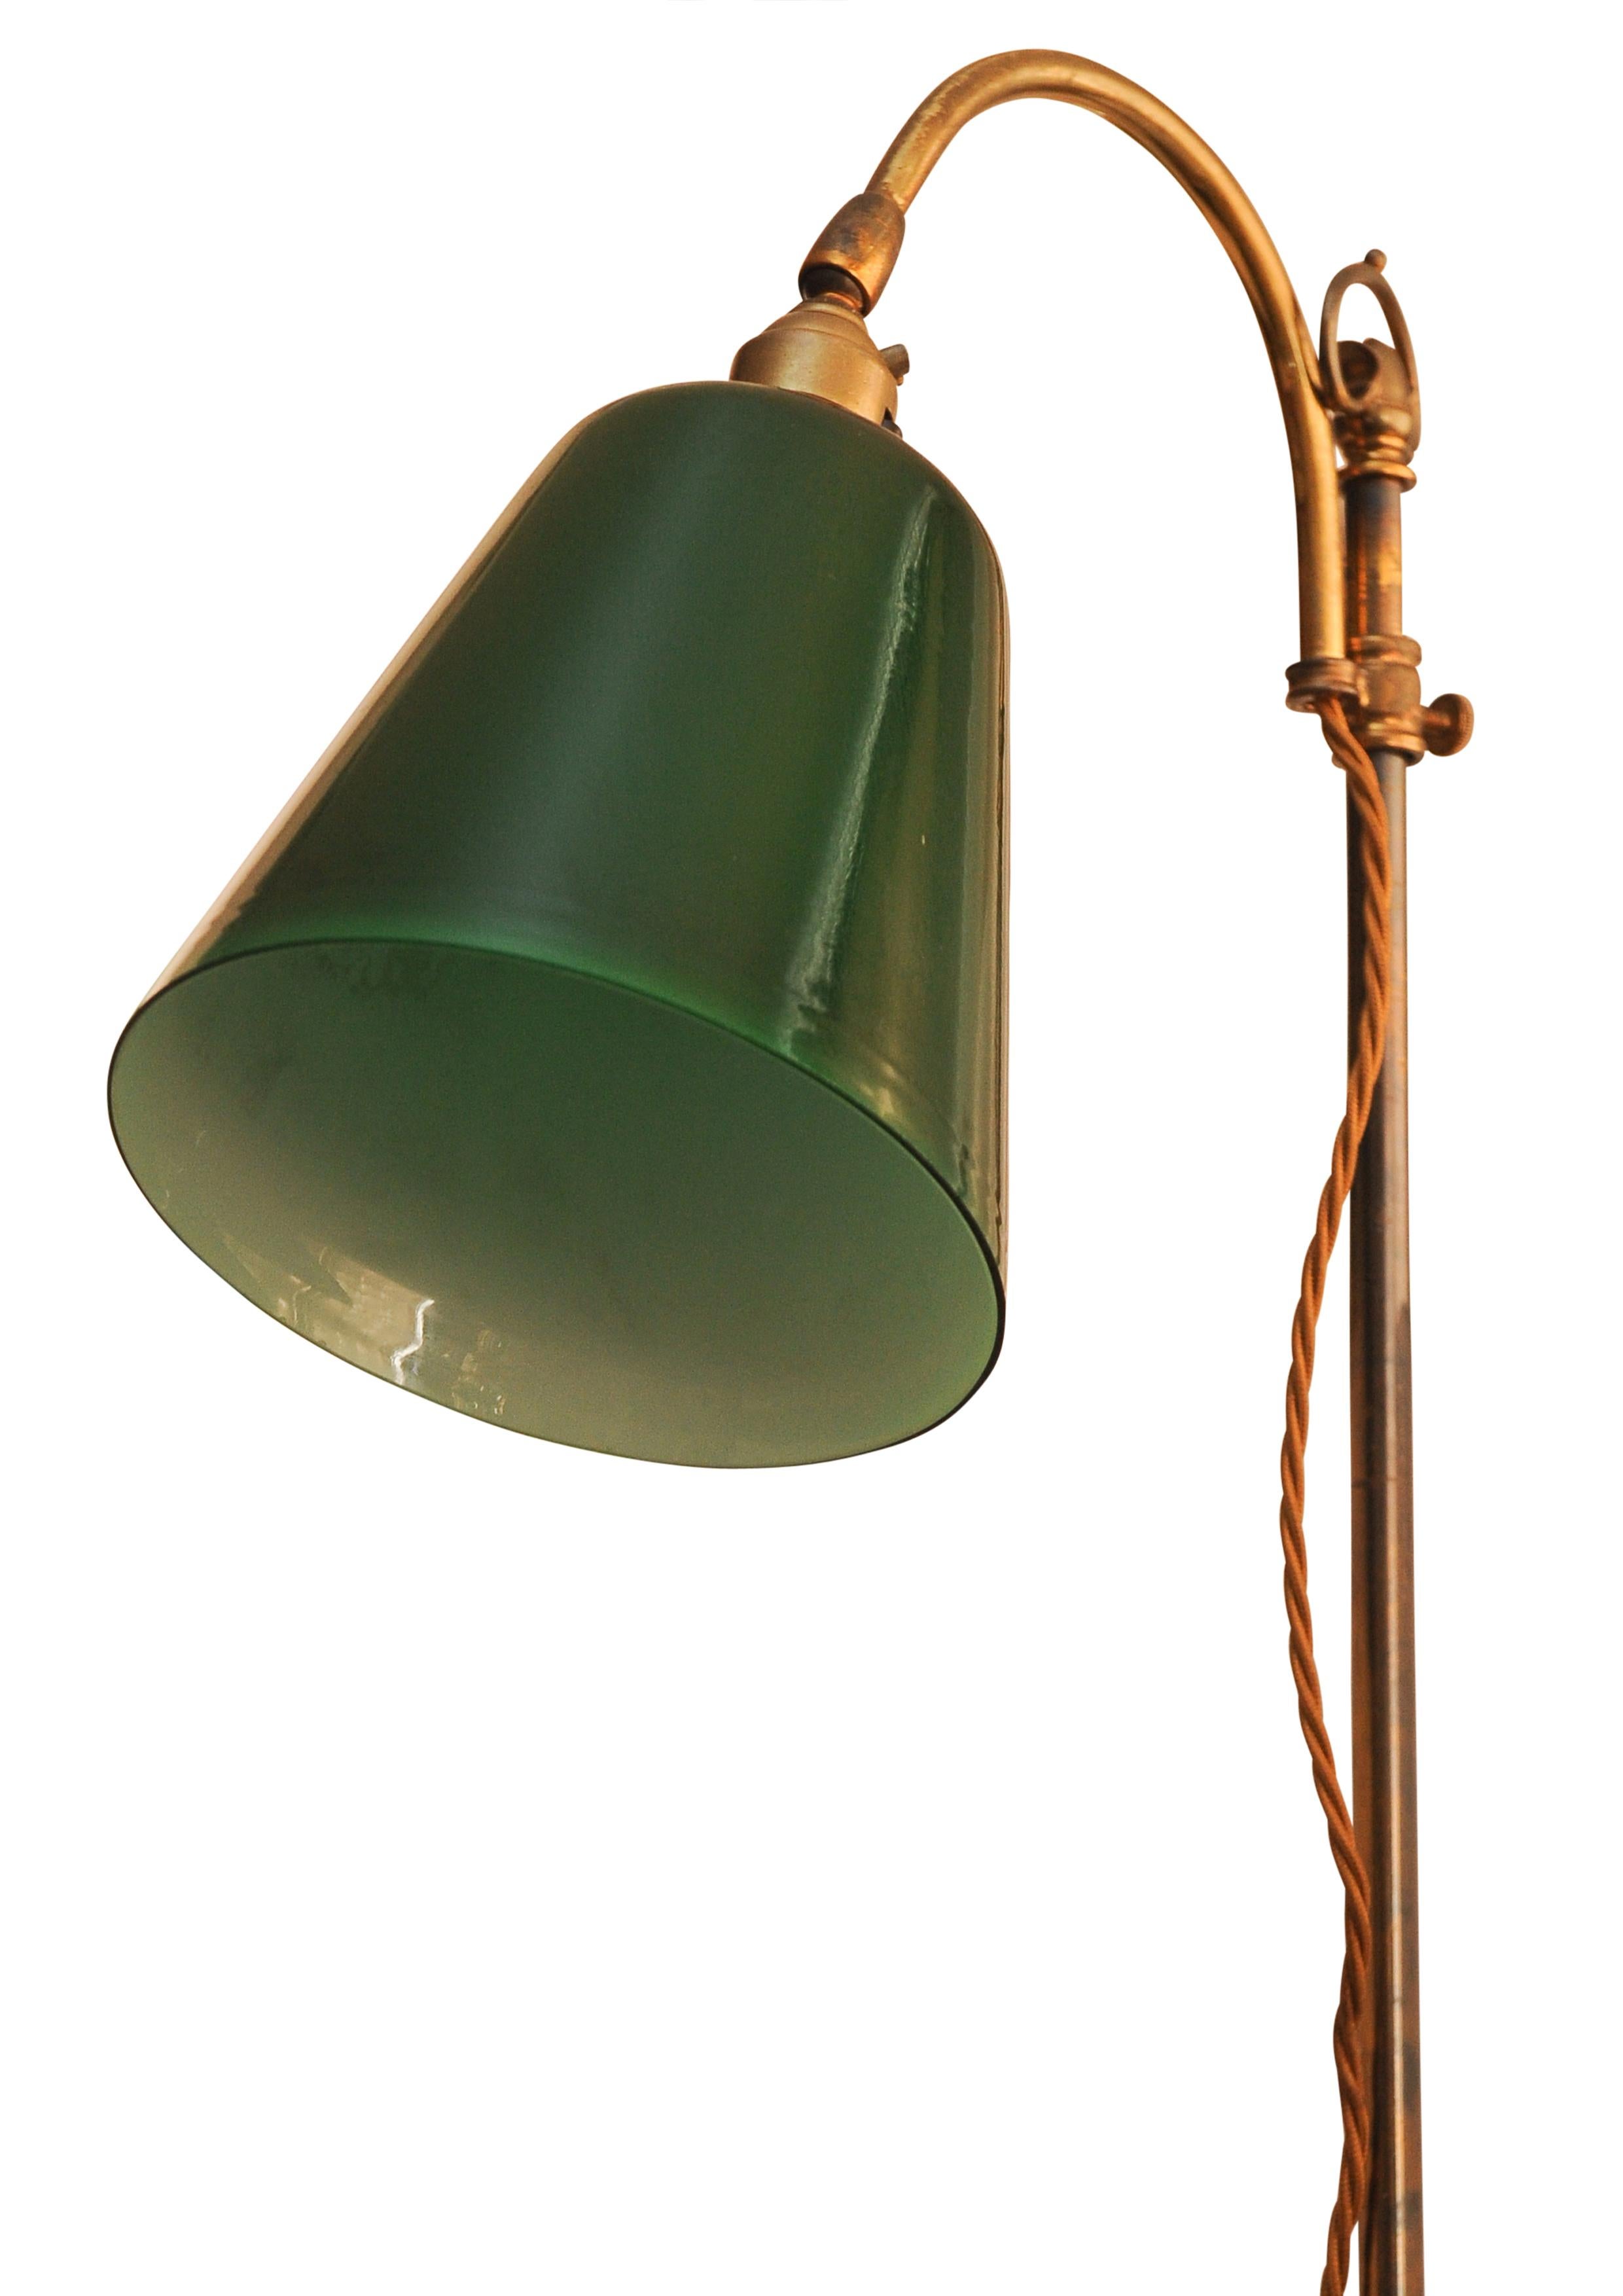 Lampe de bureau ancienne pour étudiant avec abat-jour en verre vert.

L'abat-jour est réglable en hauteur pour offrir différentes positions de lecture. 


